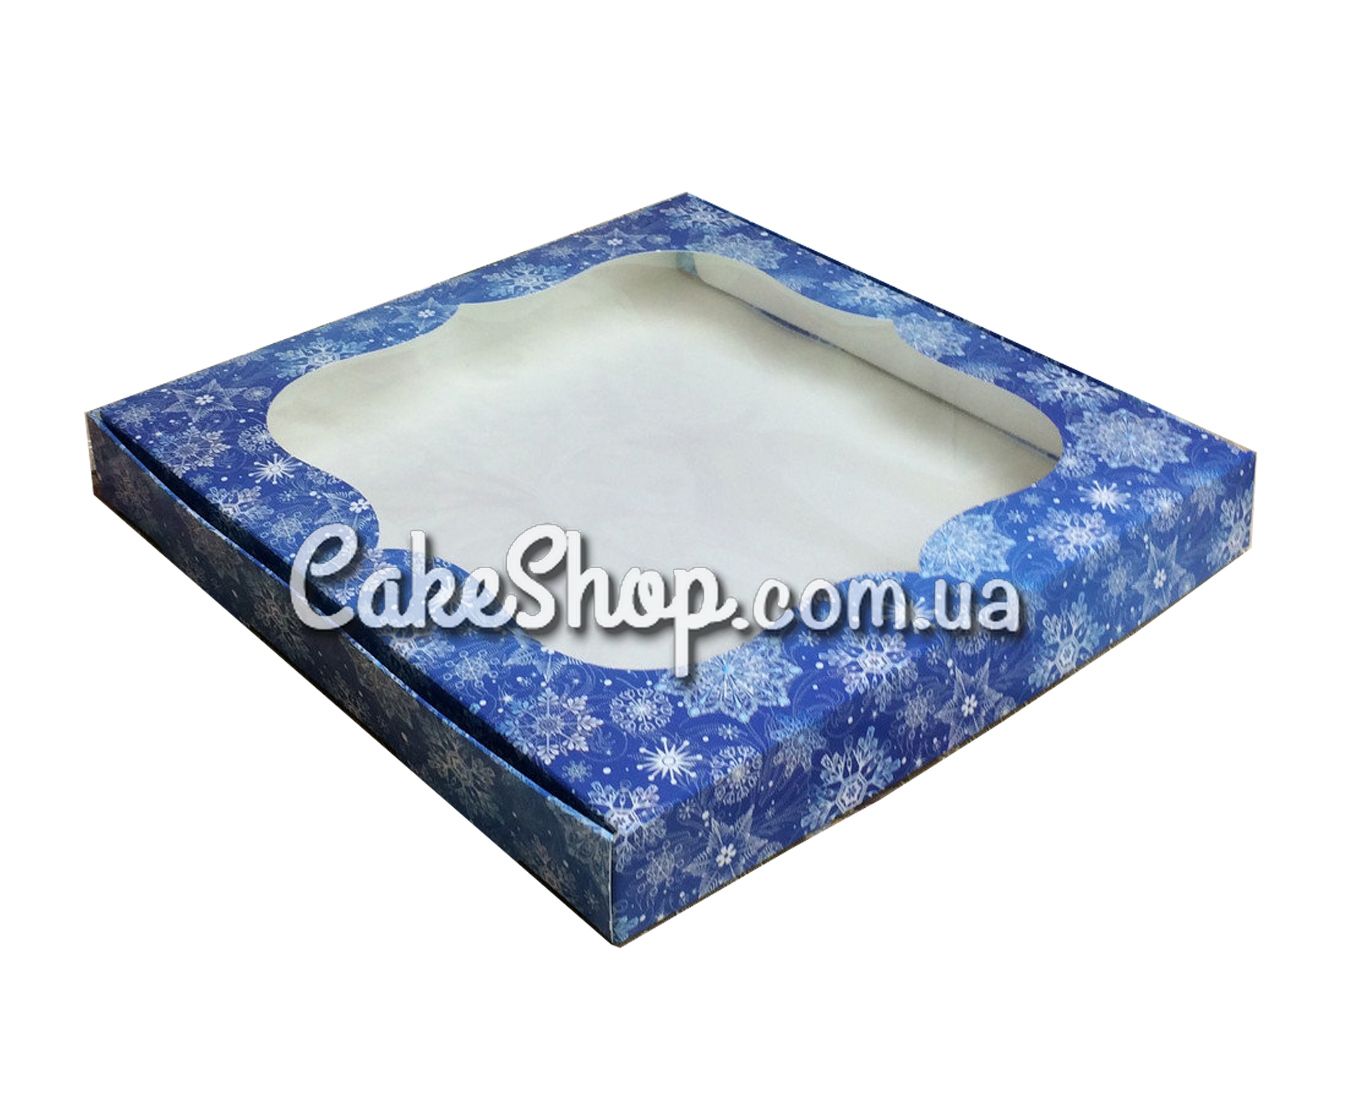 ⋗ Коробка для пряников Снежинка синяя, 15х15х3 см купить в Украине ➛ CakeShop.com.ua, фото